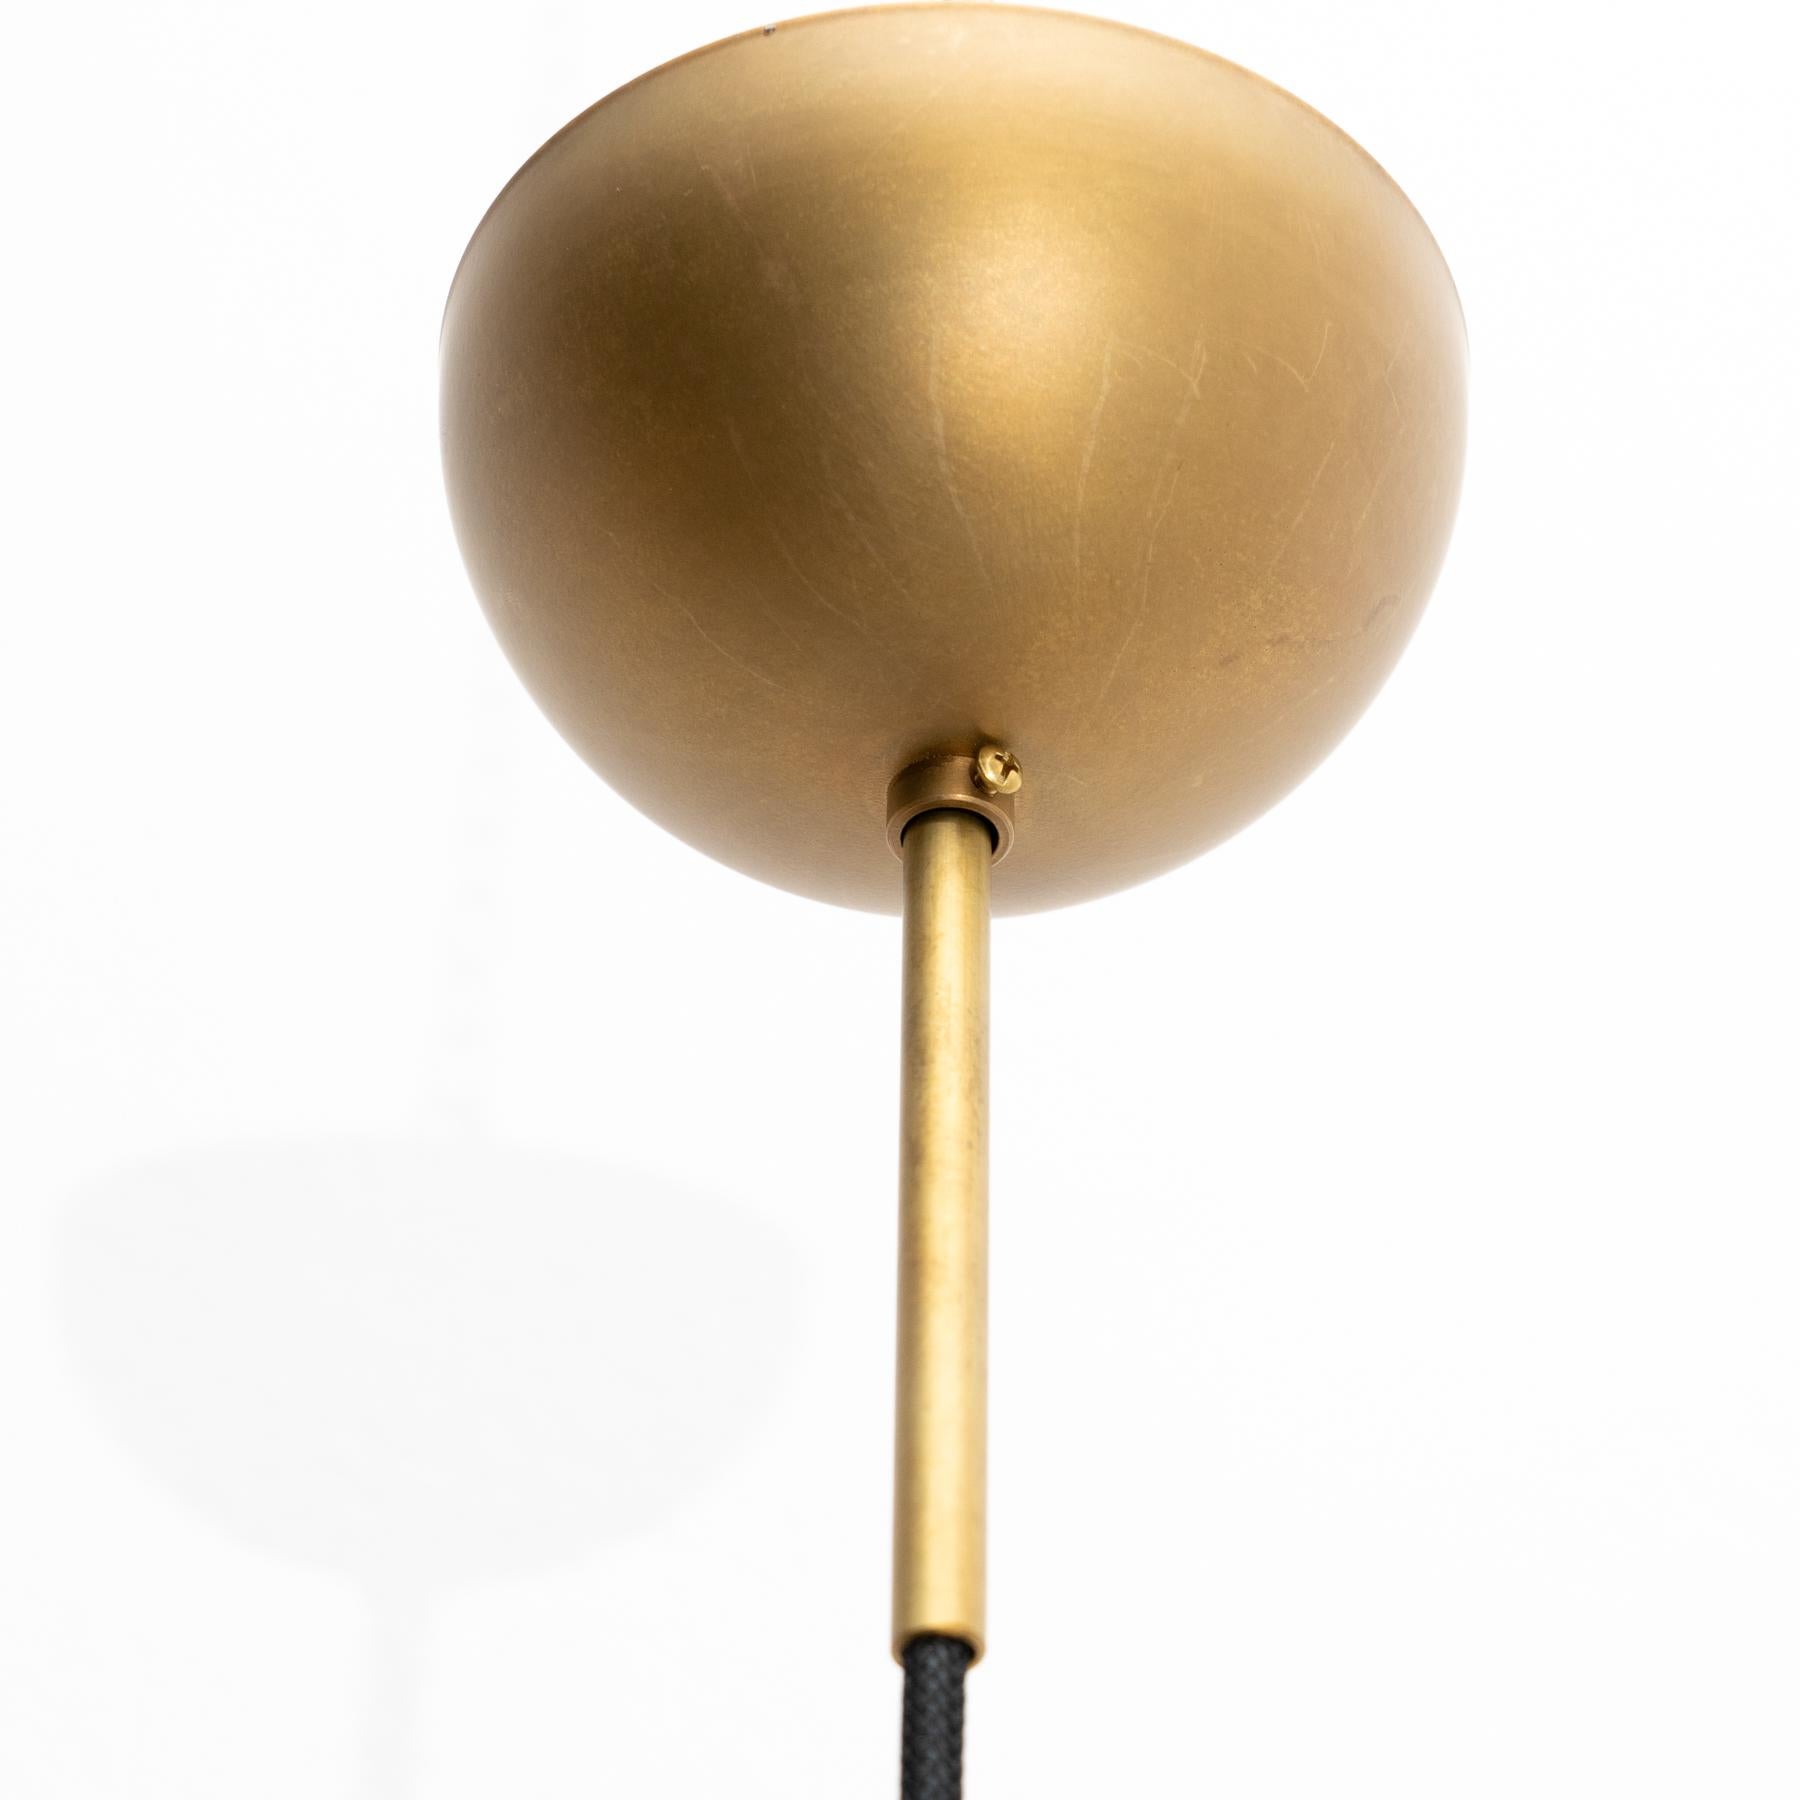 Johan Carpner Satellite 40 Ceiling Brass Black Lamp by Konsthantverk For Sale 2